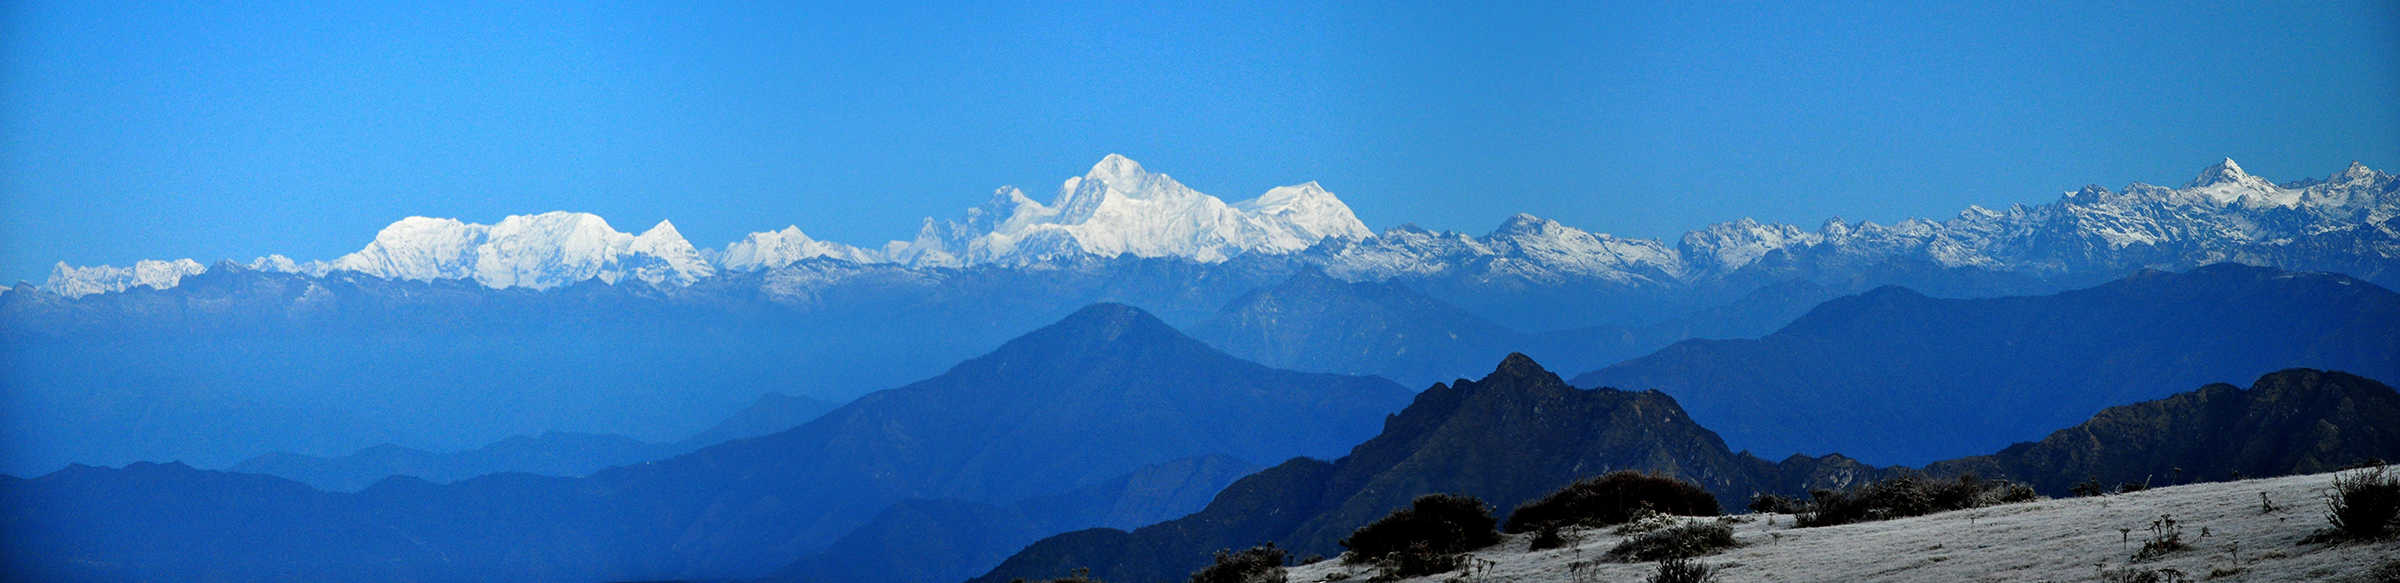 sikkim.ch_Sikkim Höhenweg-Trekking